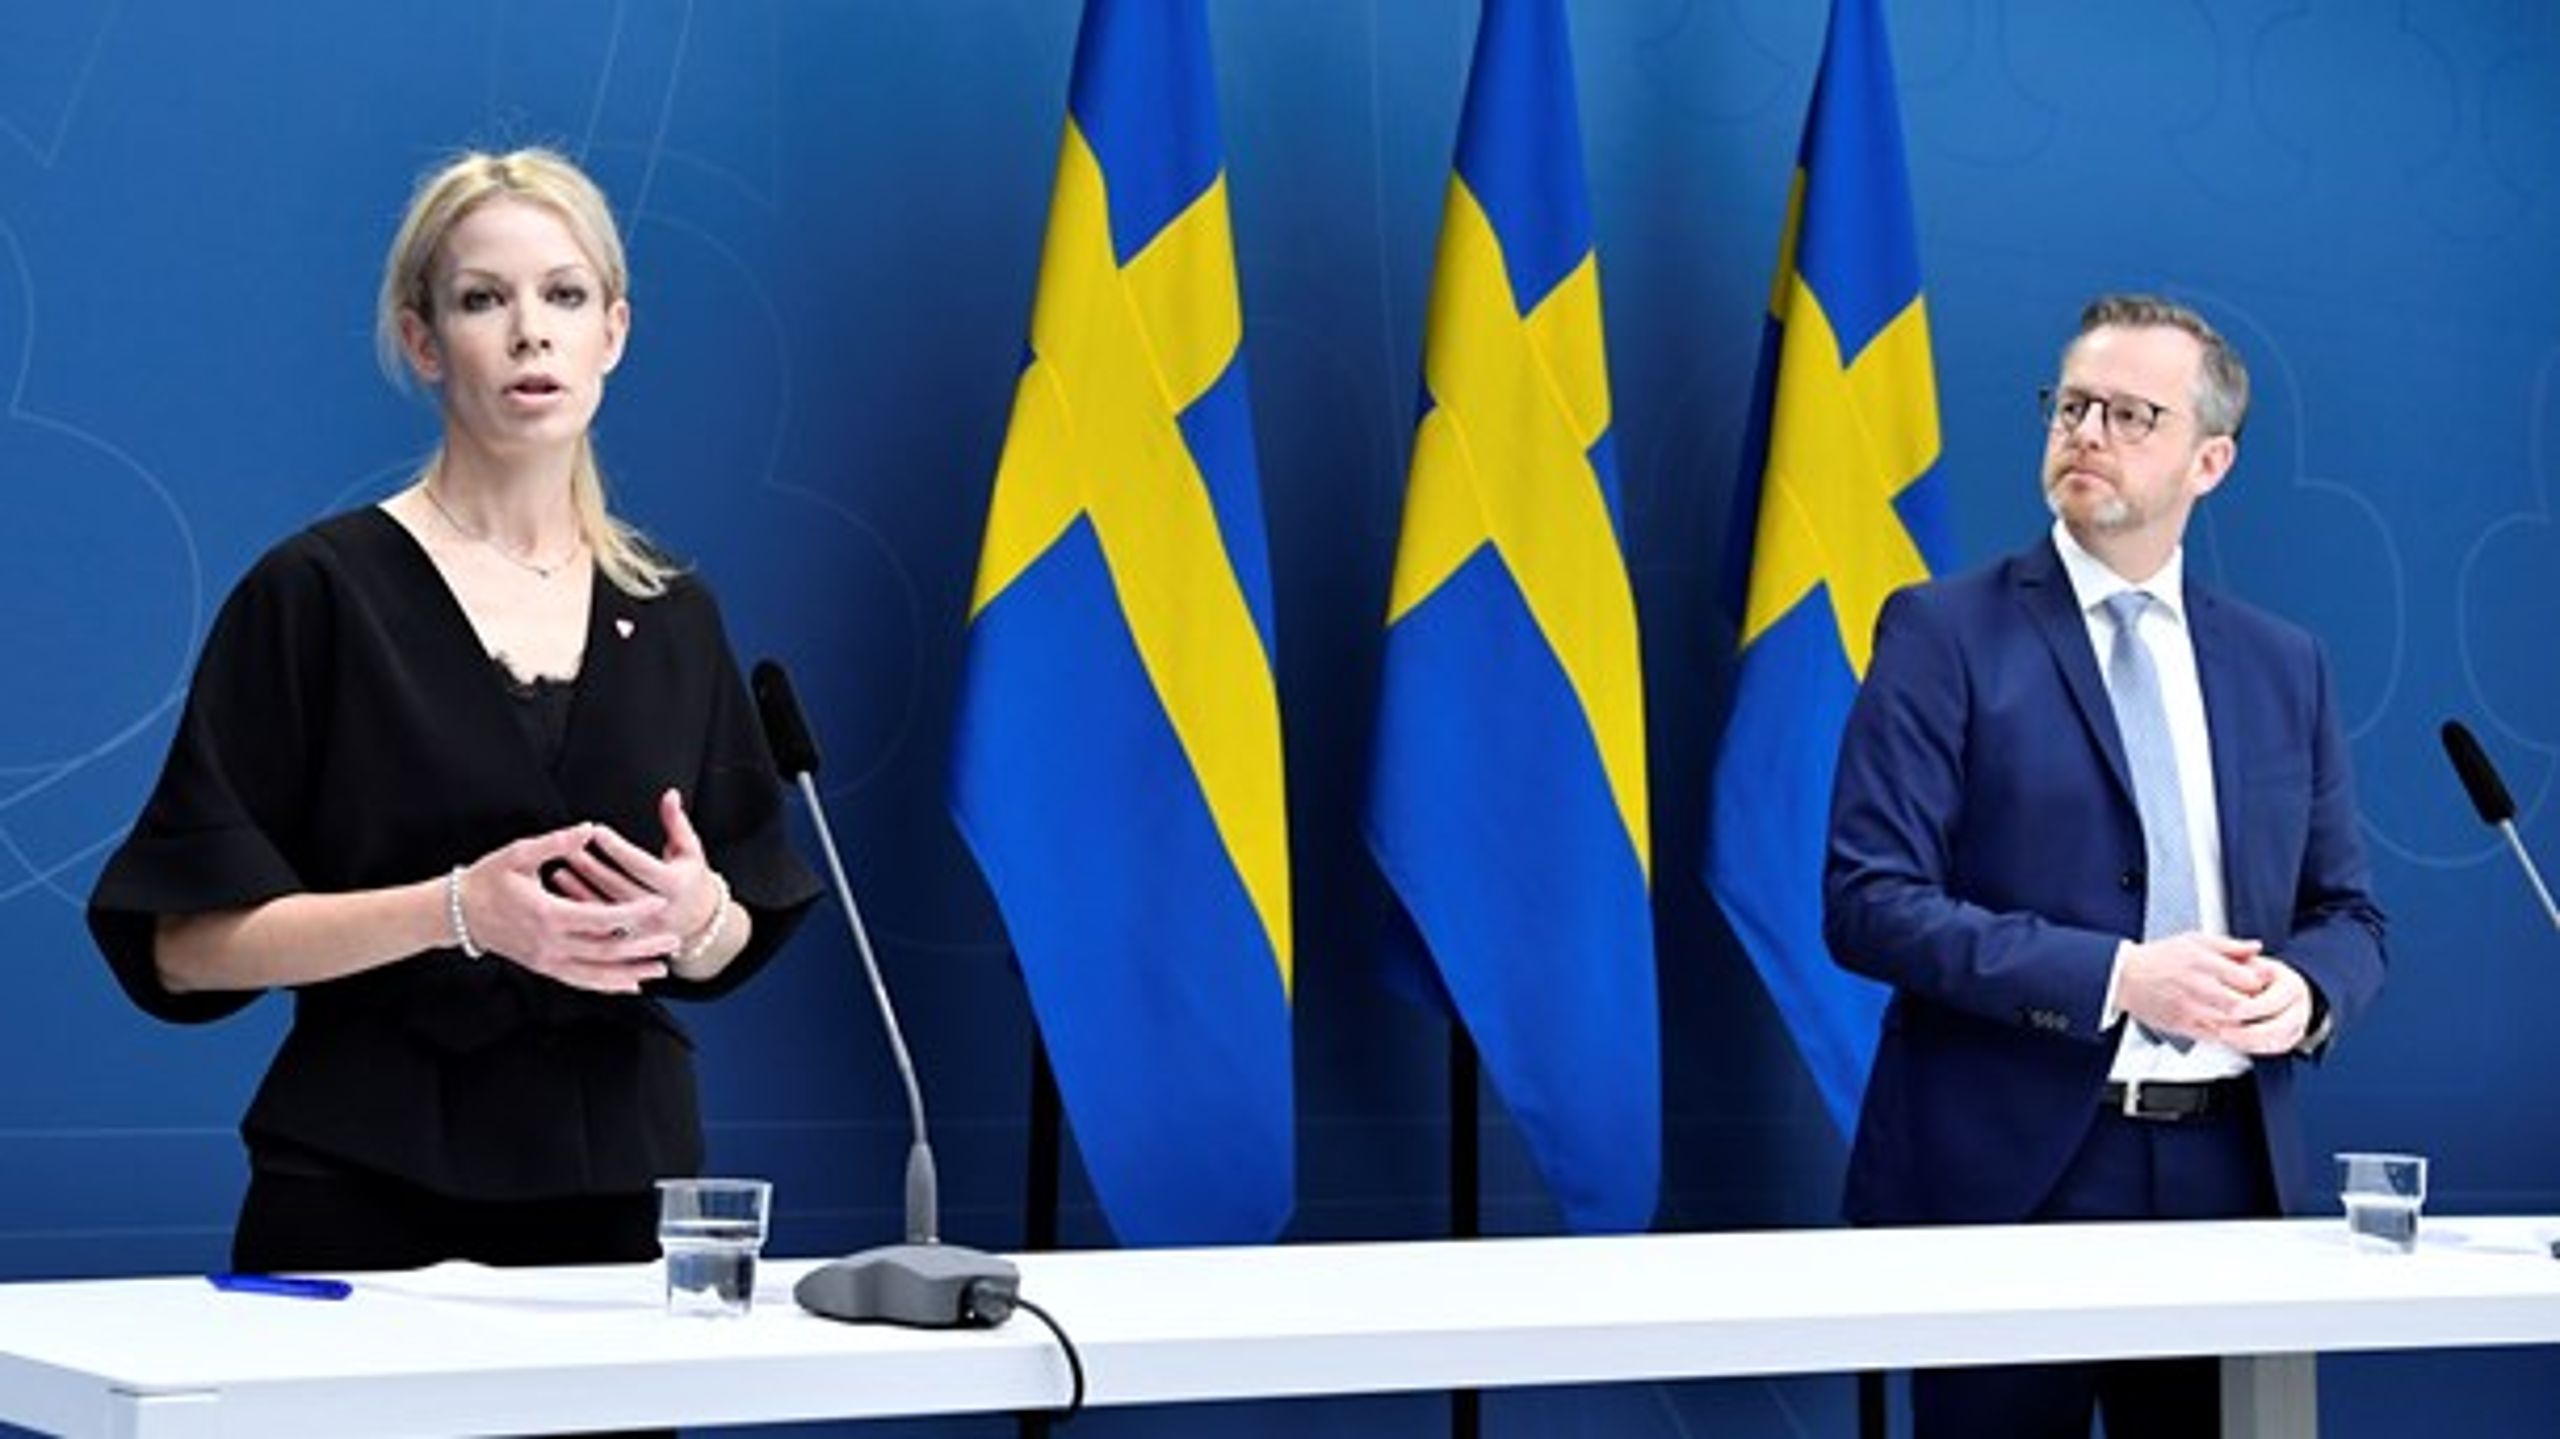 Finansborgarrådet Anna König Jerlmyr (M) och inrikesminister Mikael Damberg (S) vid dagens pressträff.